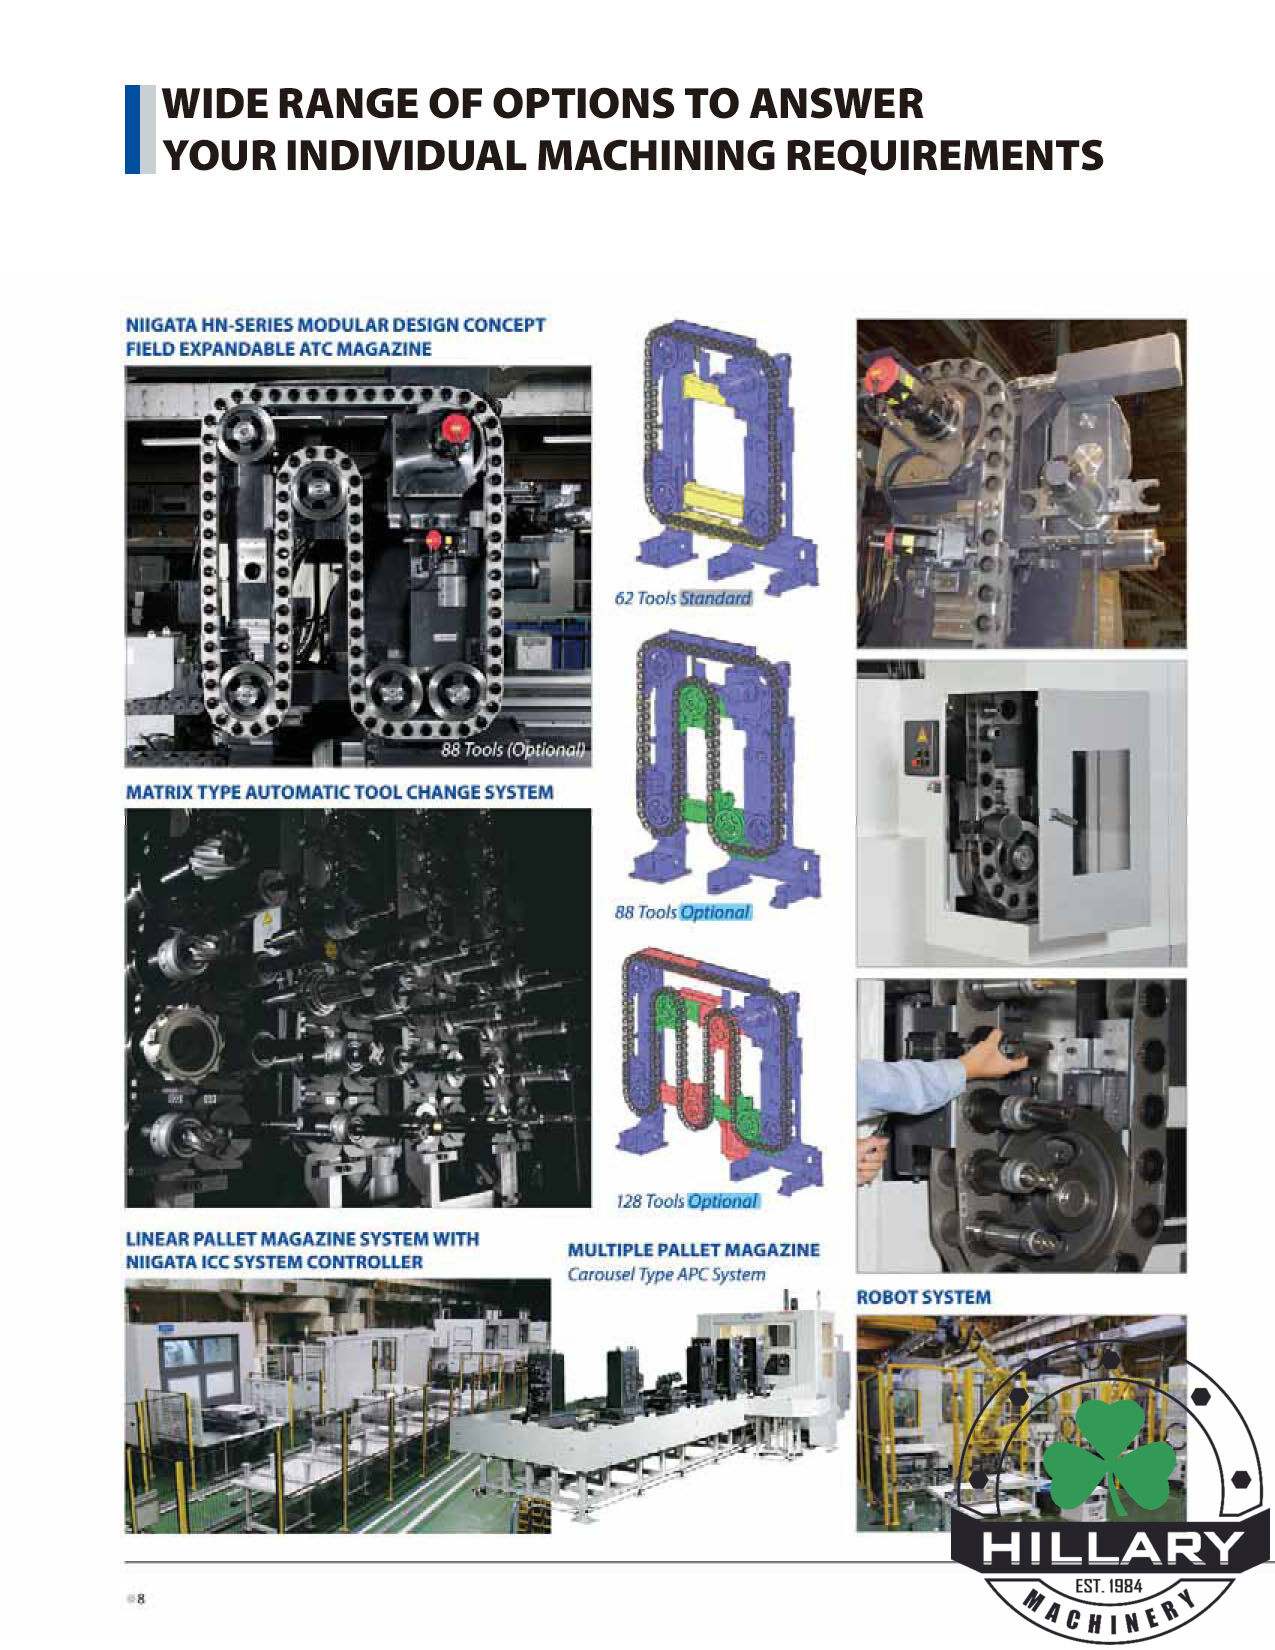 NIIGATA CNC MACHINE HN800V-Ti Horizontal Machining Centers | Hillary Machinery